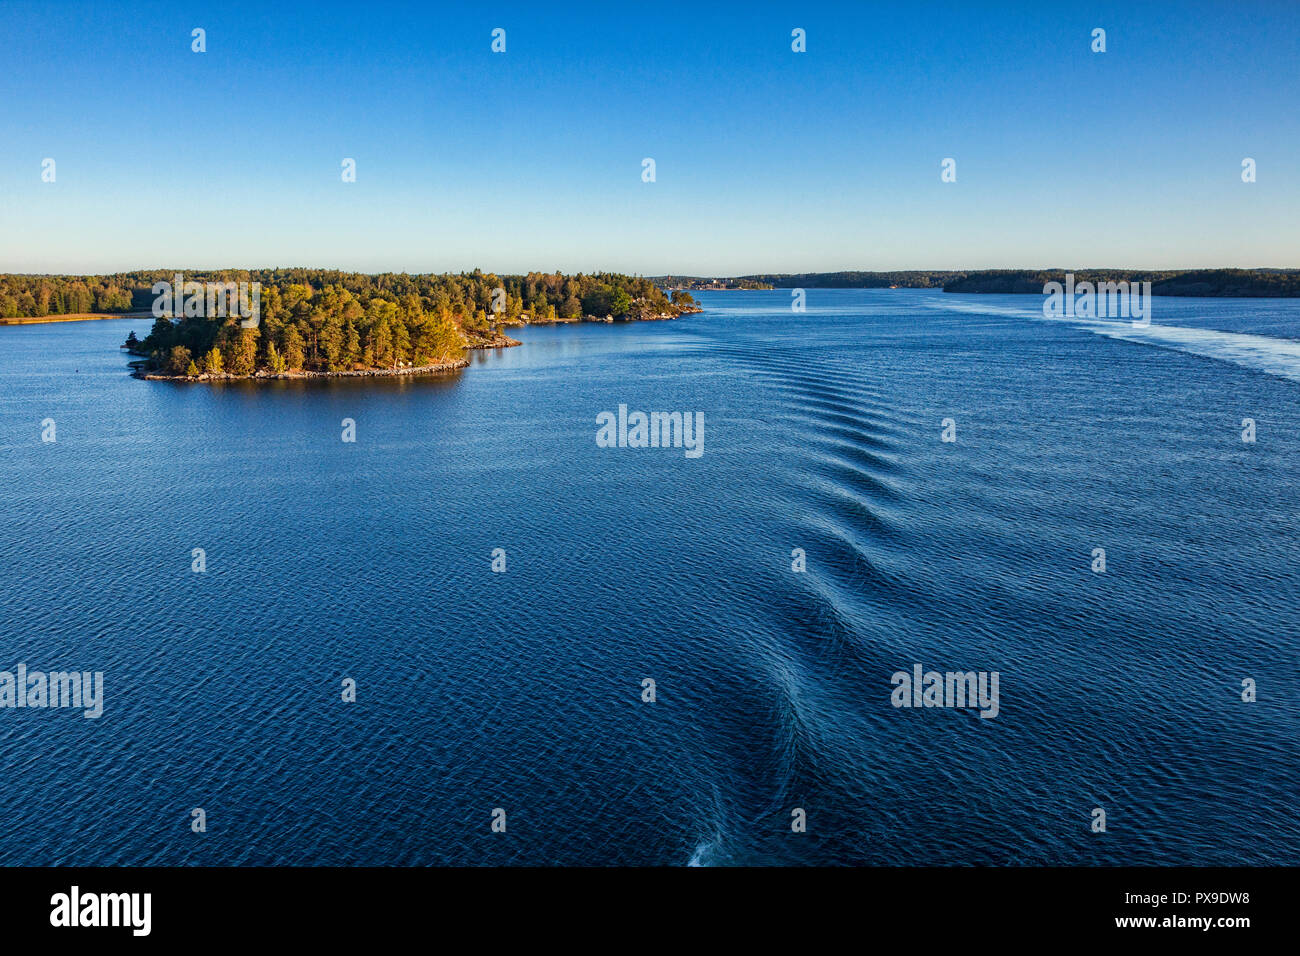 Einige der 30.000 Inseln des Stockholmer Schären, gesehen vom Deck eines Kreuzfahrtschiffes nähert sich dem Hafen, kurz nach Sonnenaufgang. Stockfoto